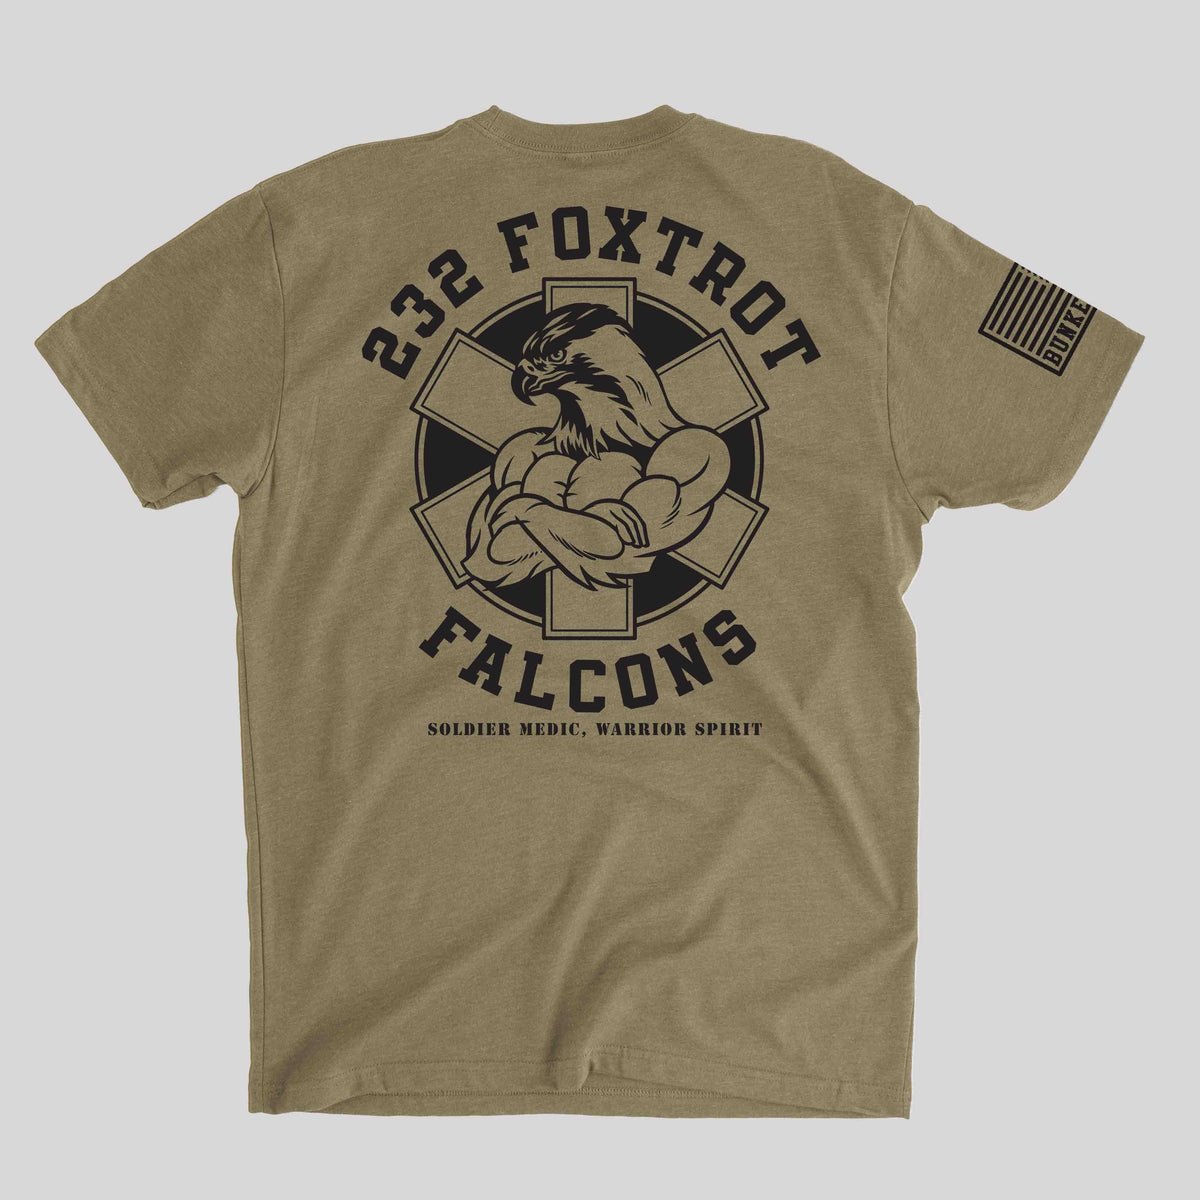 232 Foxtrot Falcons Company